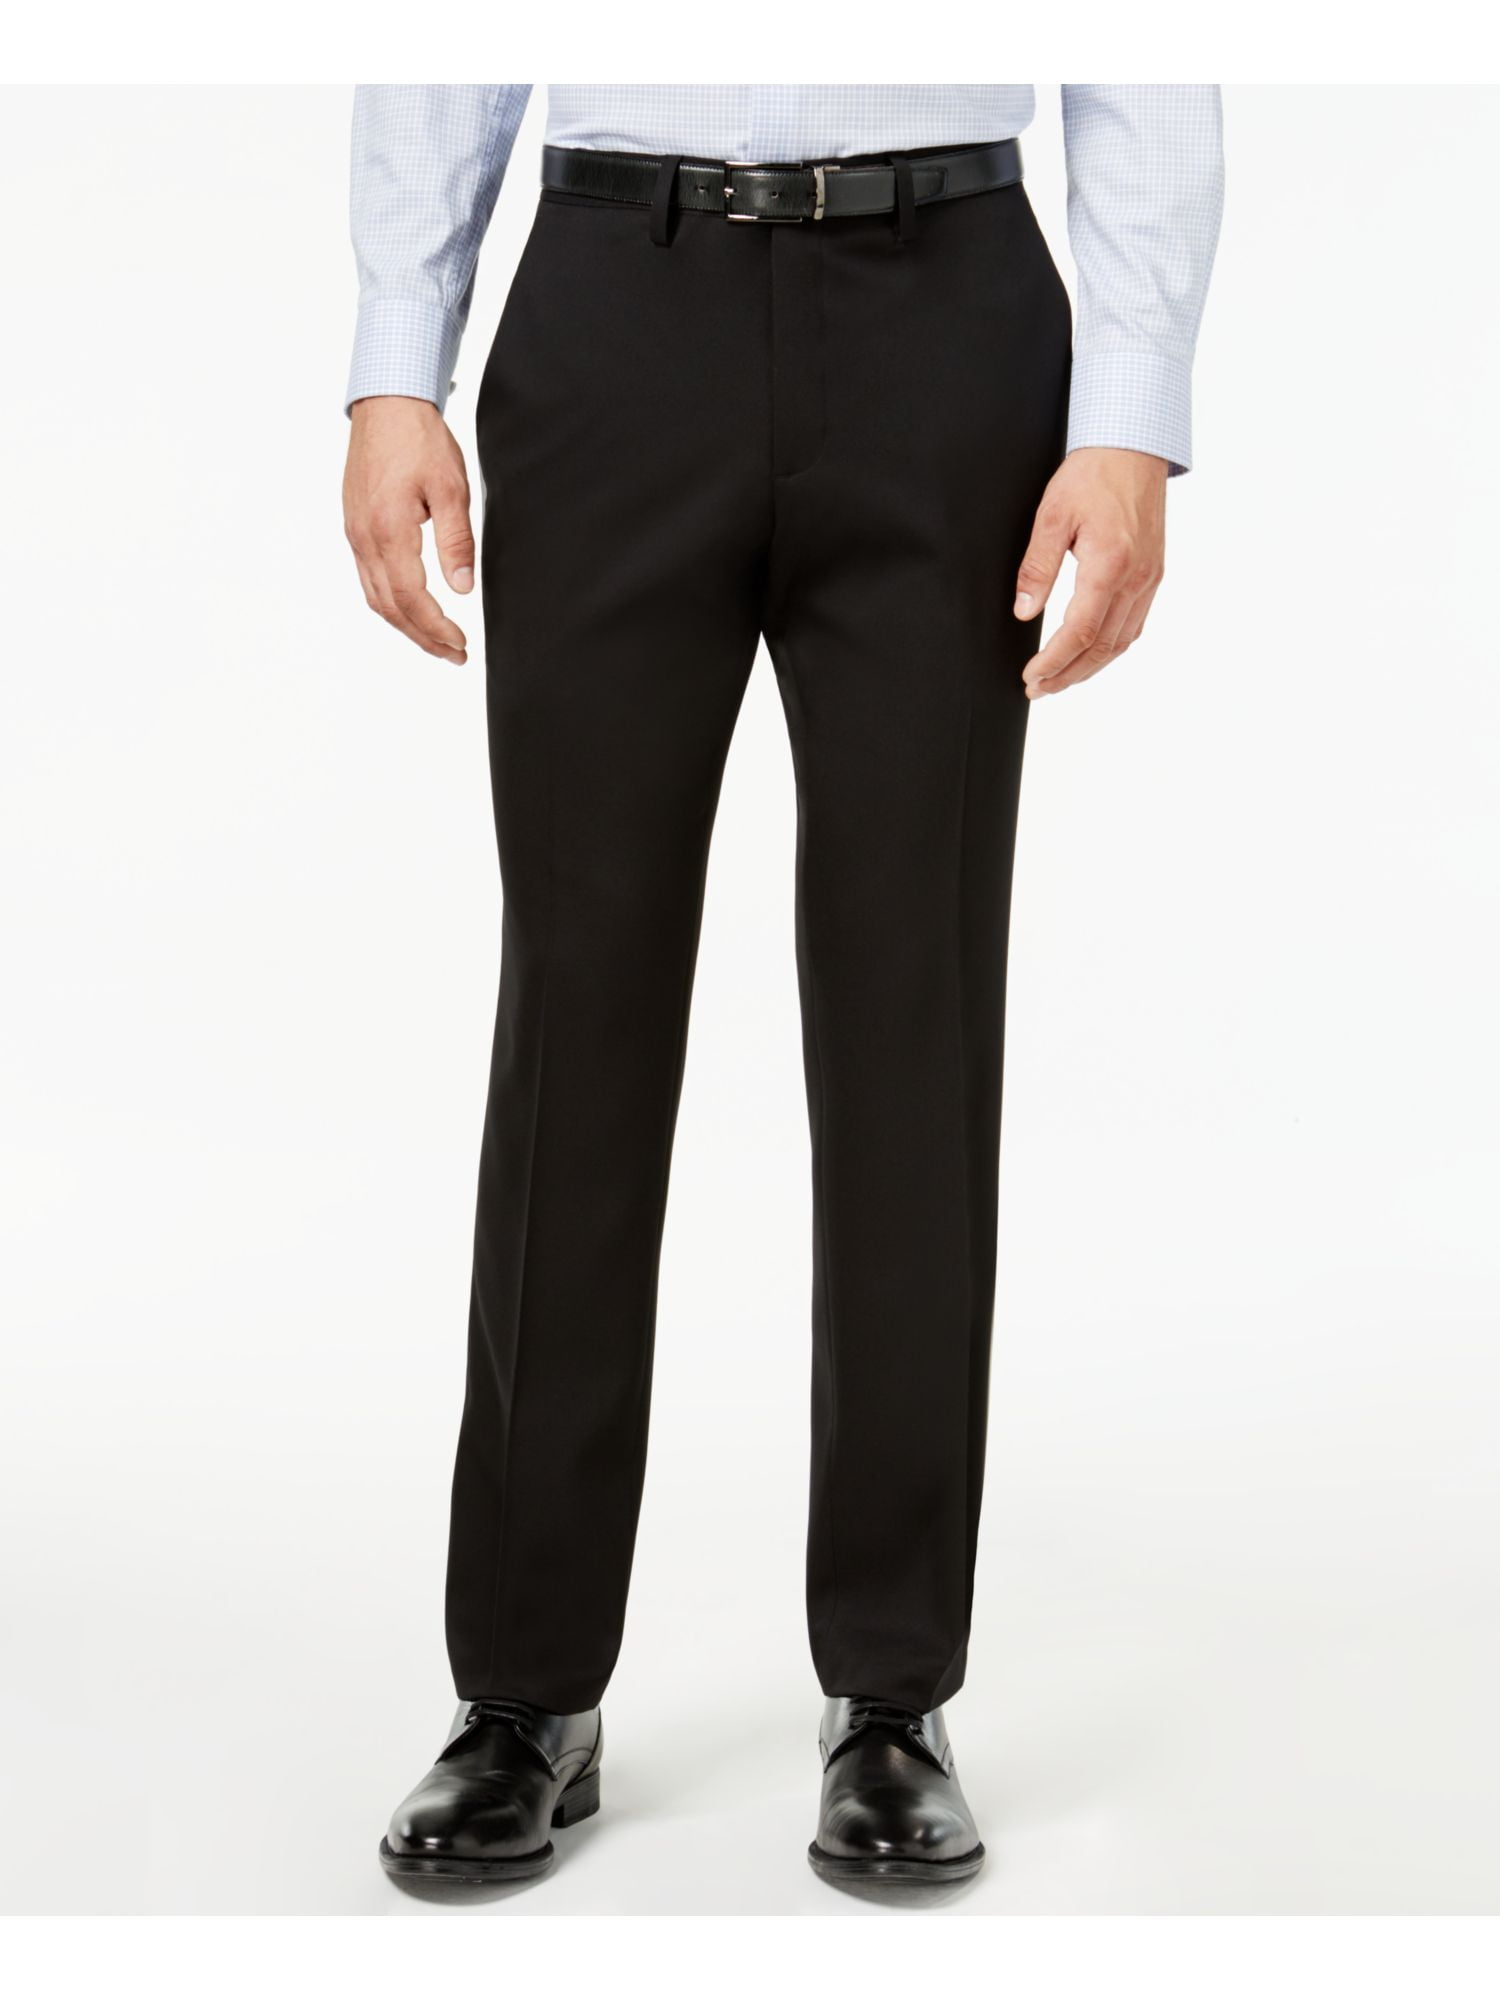 Men Cotton Business Leisure Straight-Leg Long Pants Casual Pants,Grey Blue,36,L34 